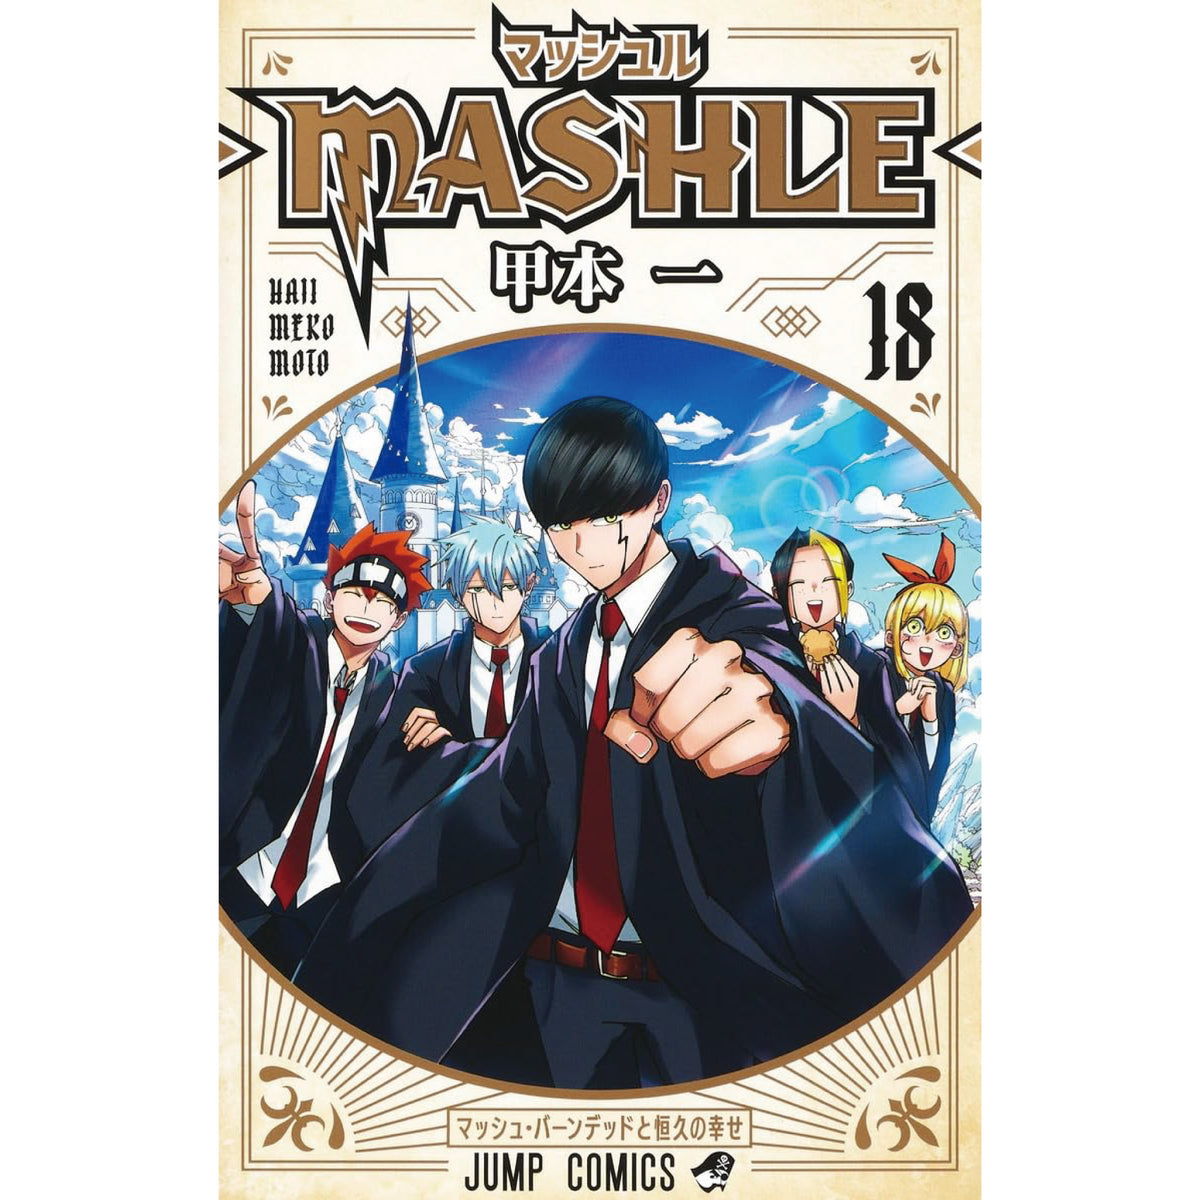 マッシュル-MASHLE- 全巻セット 全18巻 甲本一 八文字屋オリジナル特典 